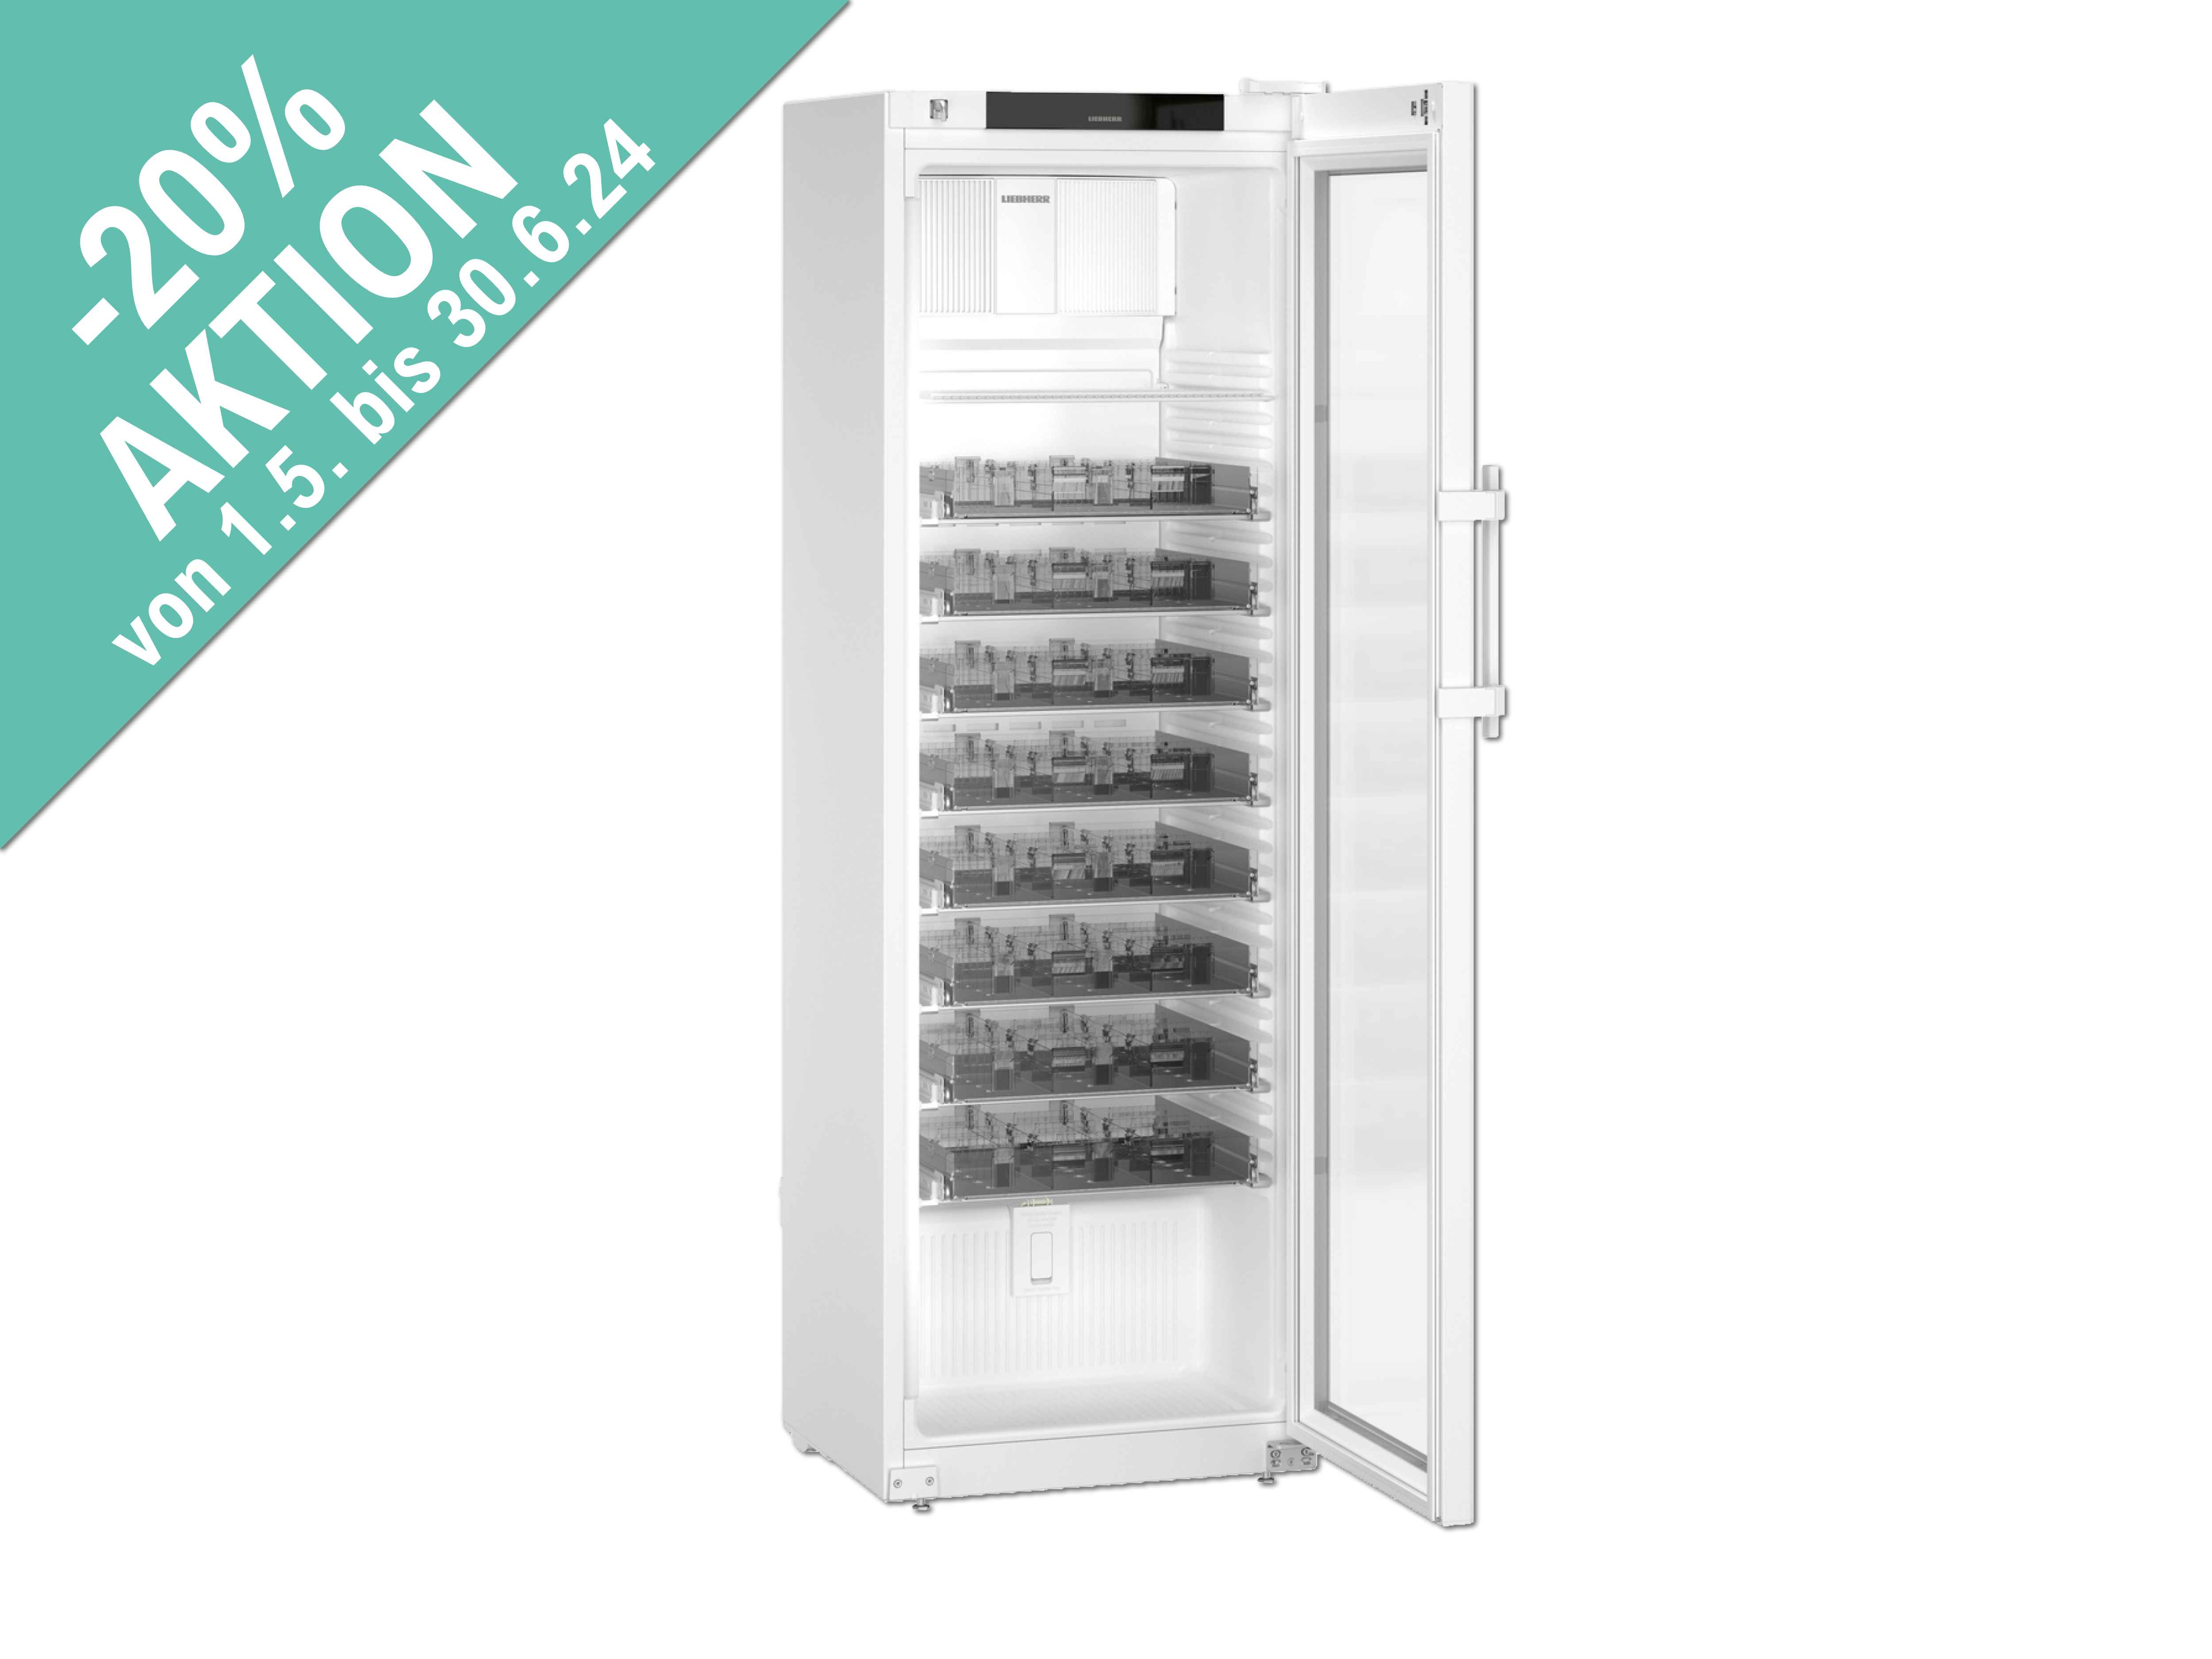    Medikamentenkühlschrank Liebherr 4011, LED, Glastür + 8 Laden